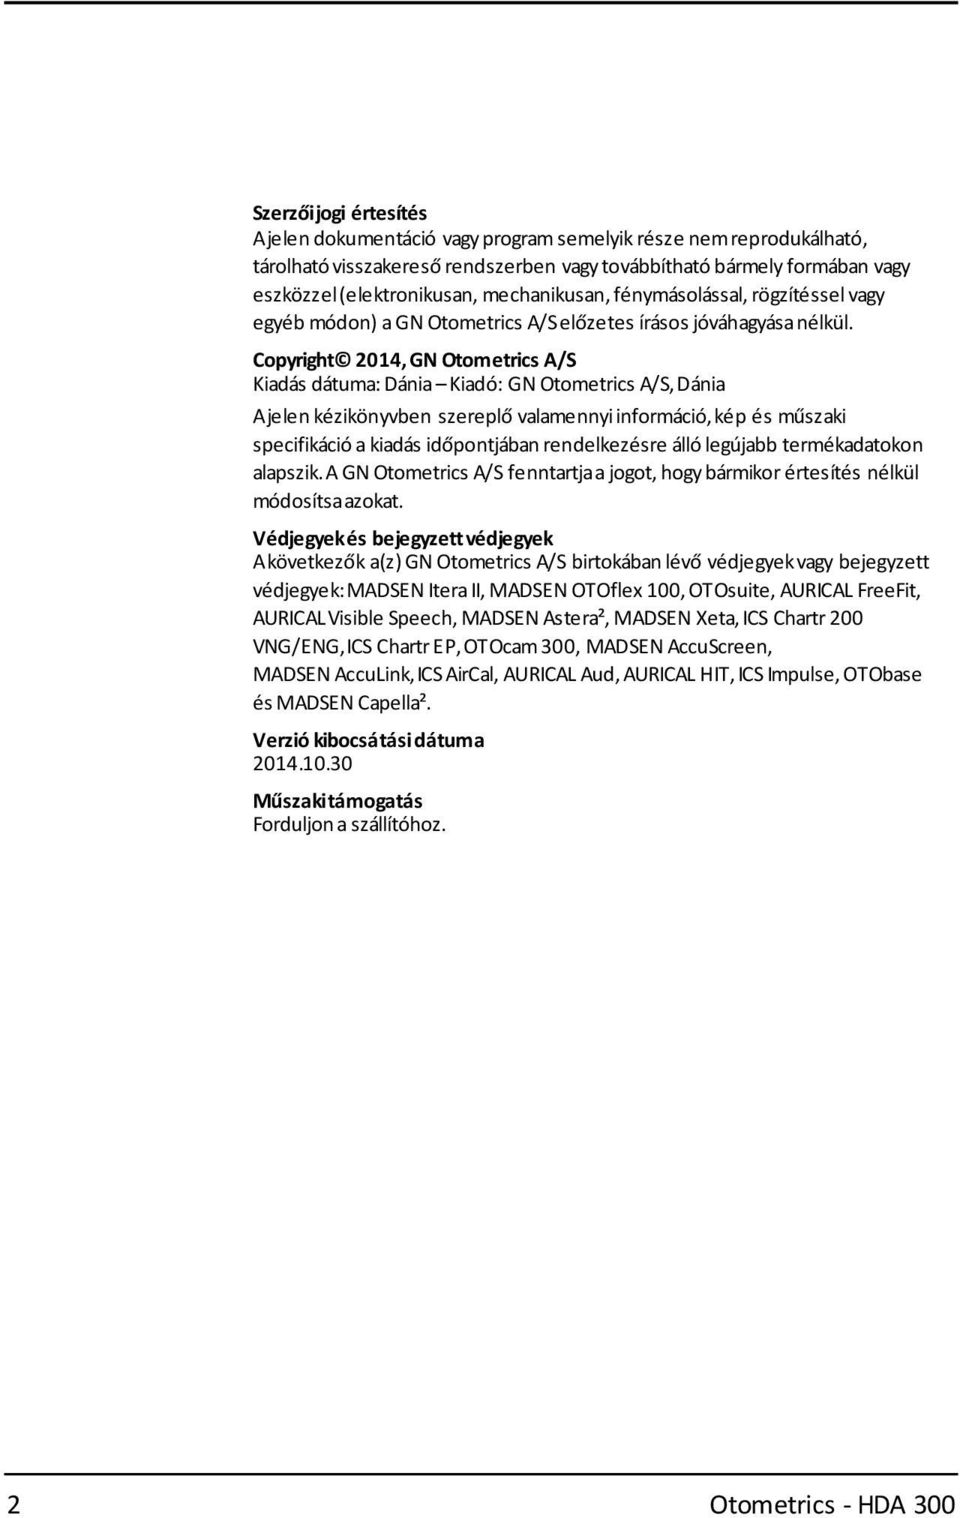 Copyright 2014, GN Otometrics A/S Kiadás dátuma: Dánia Kiadó: GN Otometrics A/S,Dánia Ajelen kézikönyvben szereplő valamennyiinformáció,kép és műszaki specifikáció a kiadás időpontjában rendelkezésre